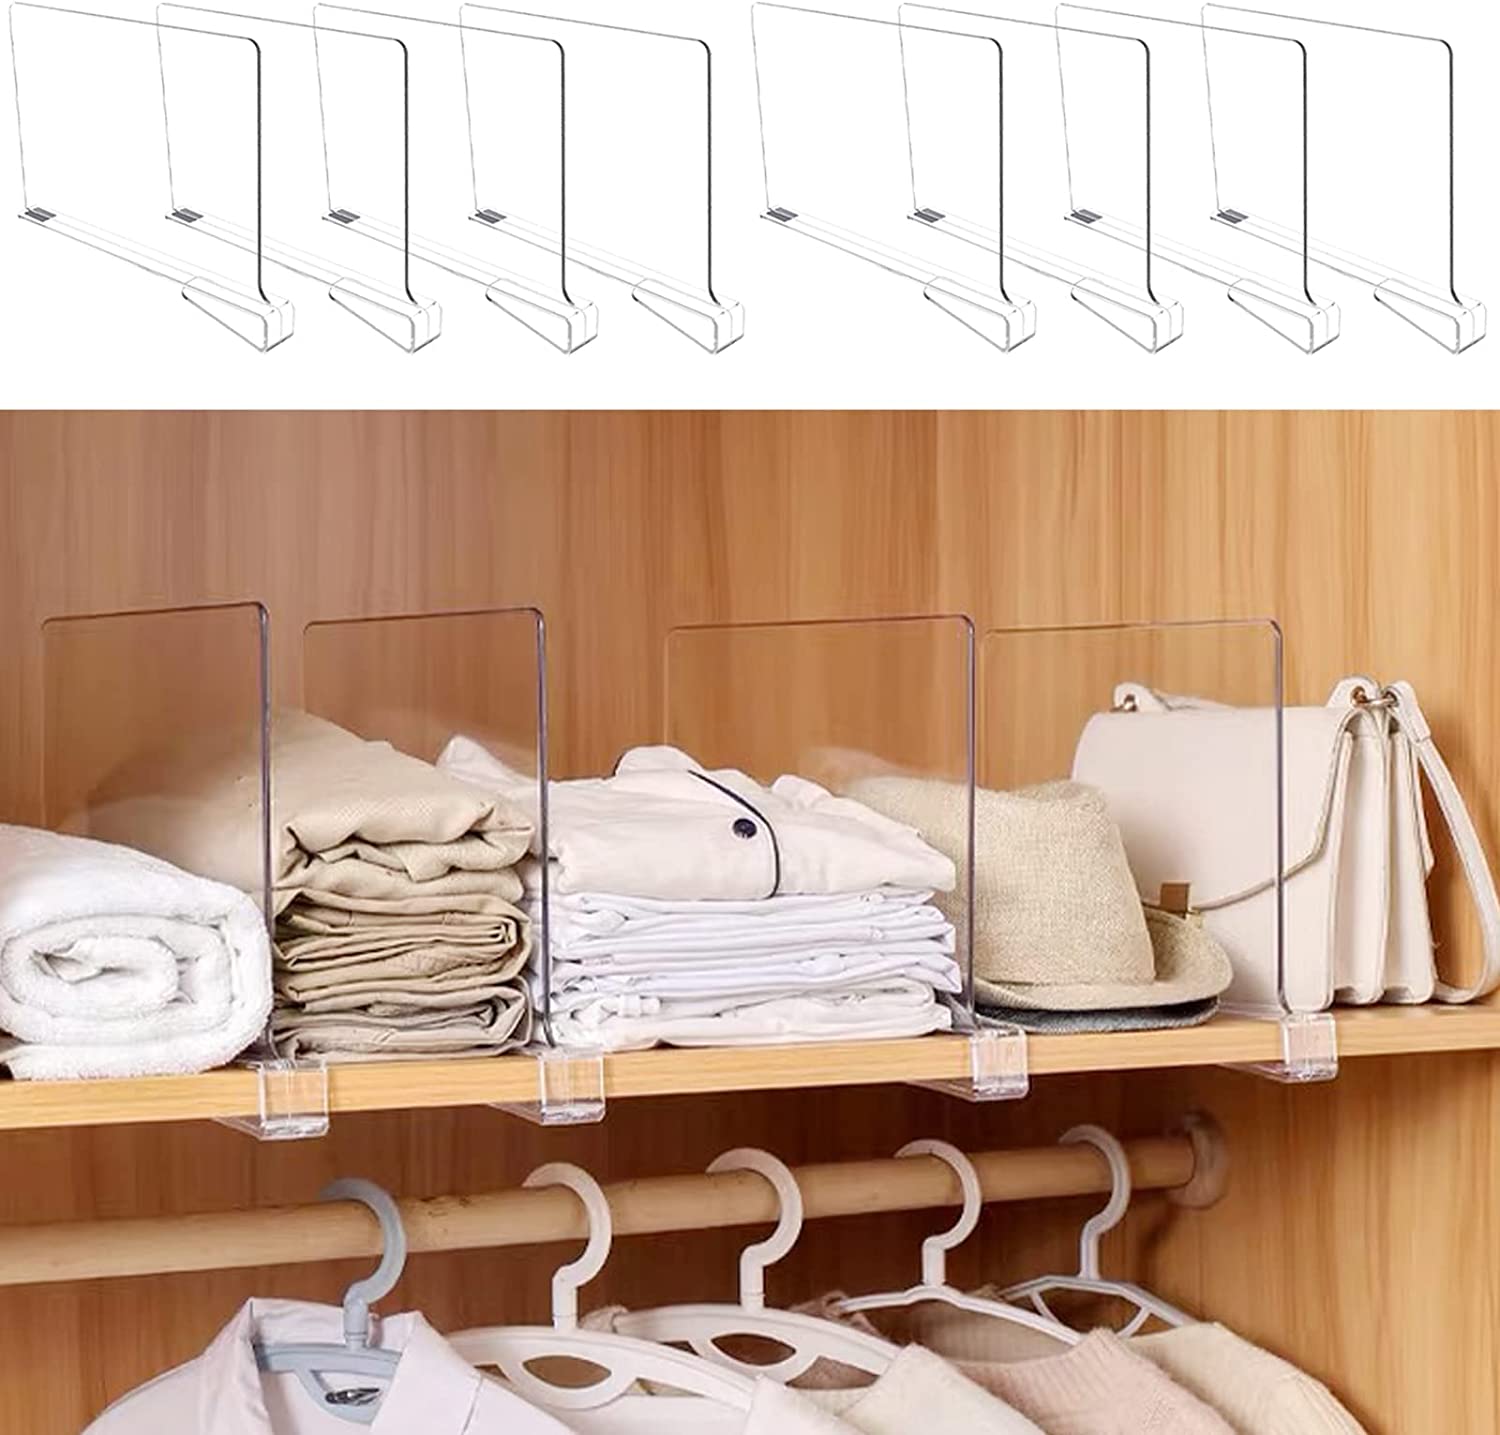 Undergarments + Closet Essentials